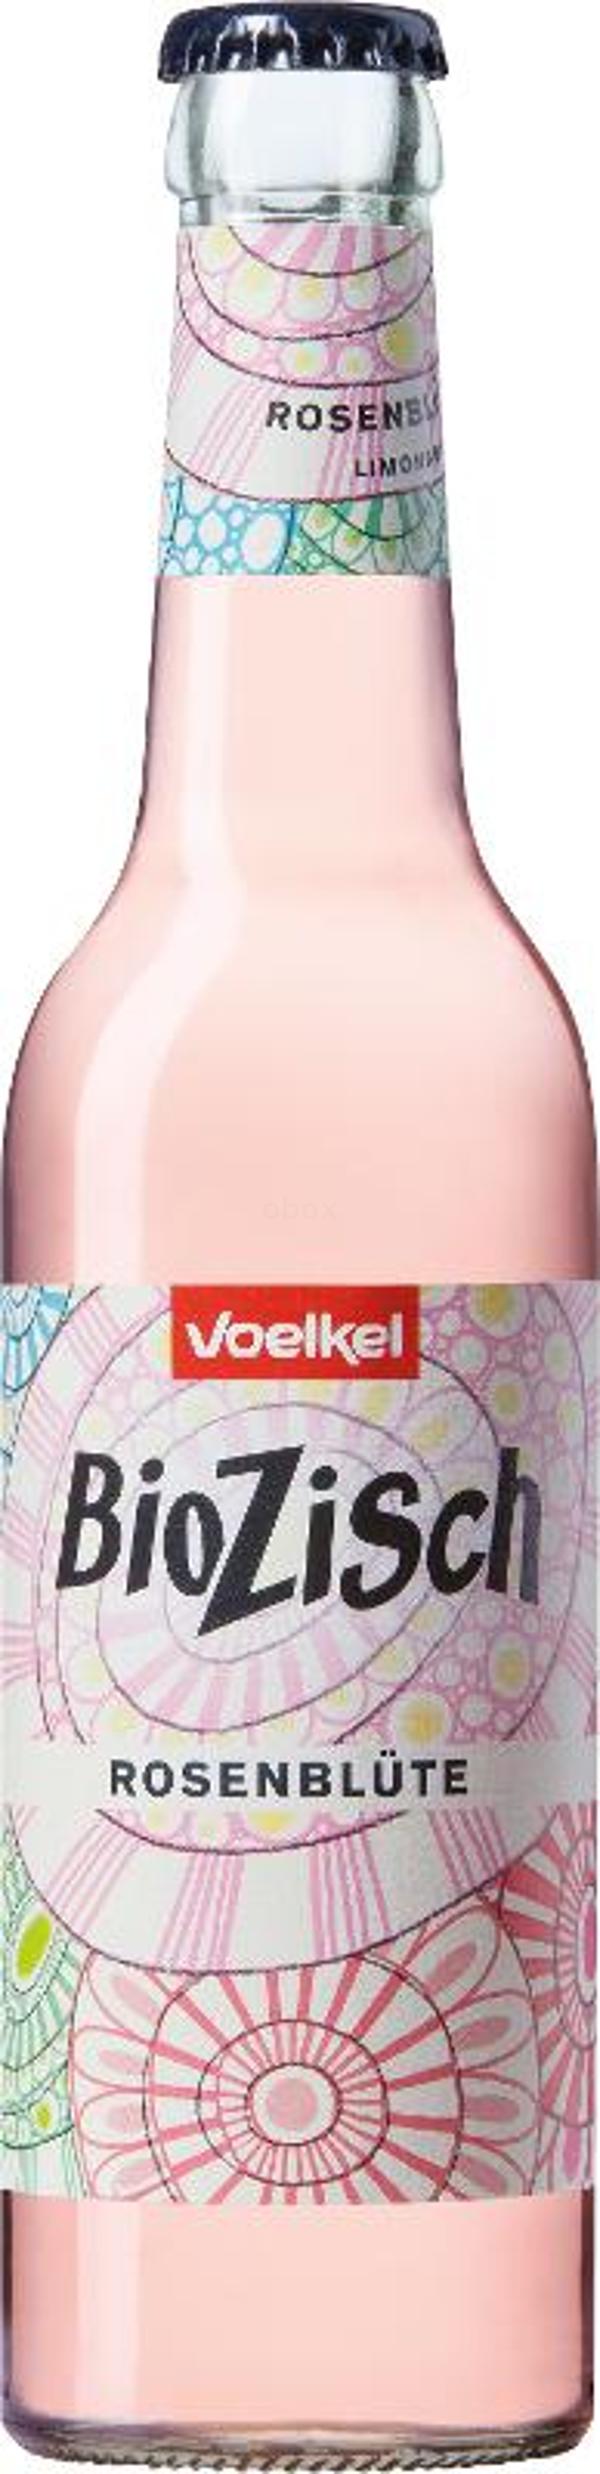 Produktfoto zu BioZisch Rosenblüte - 0,33l